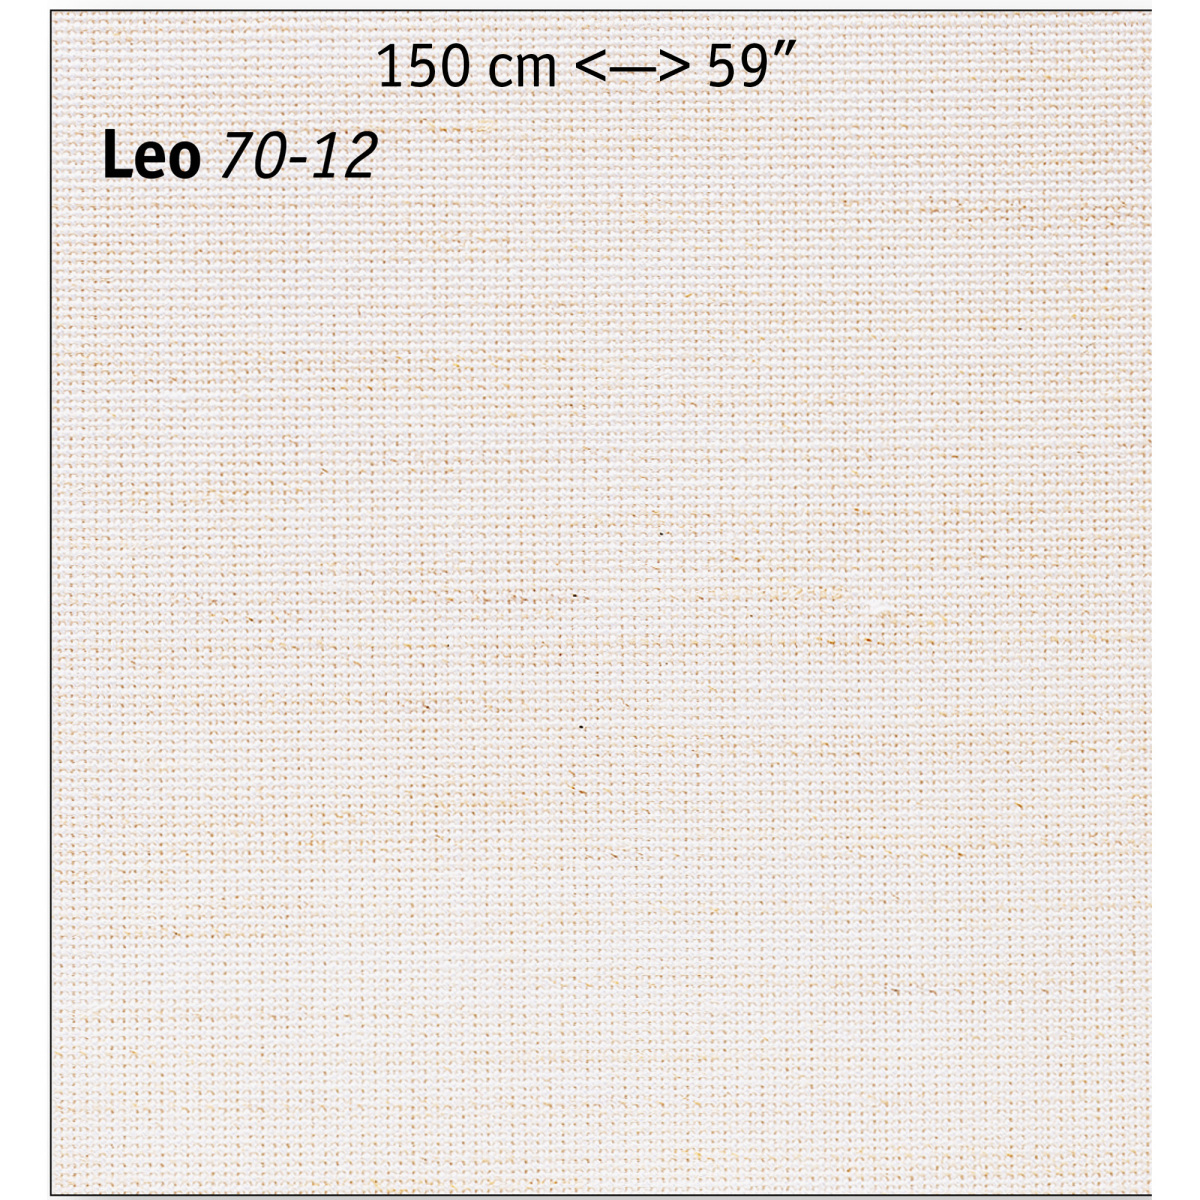 206-Leo70-12-inch_cm-2000x2000pix-KW10-MR3